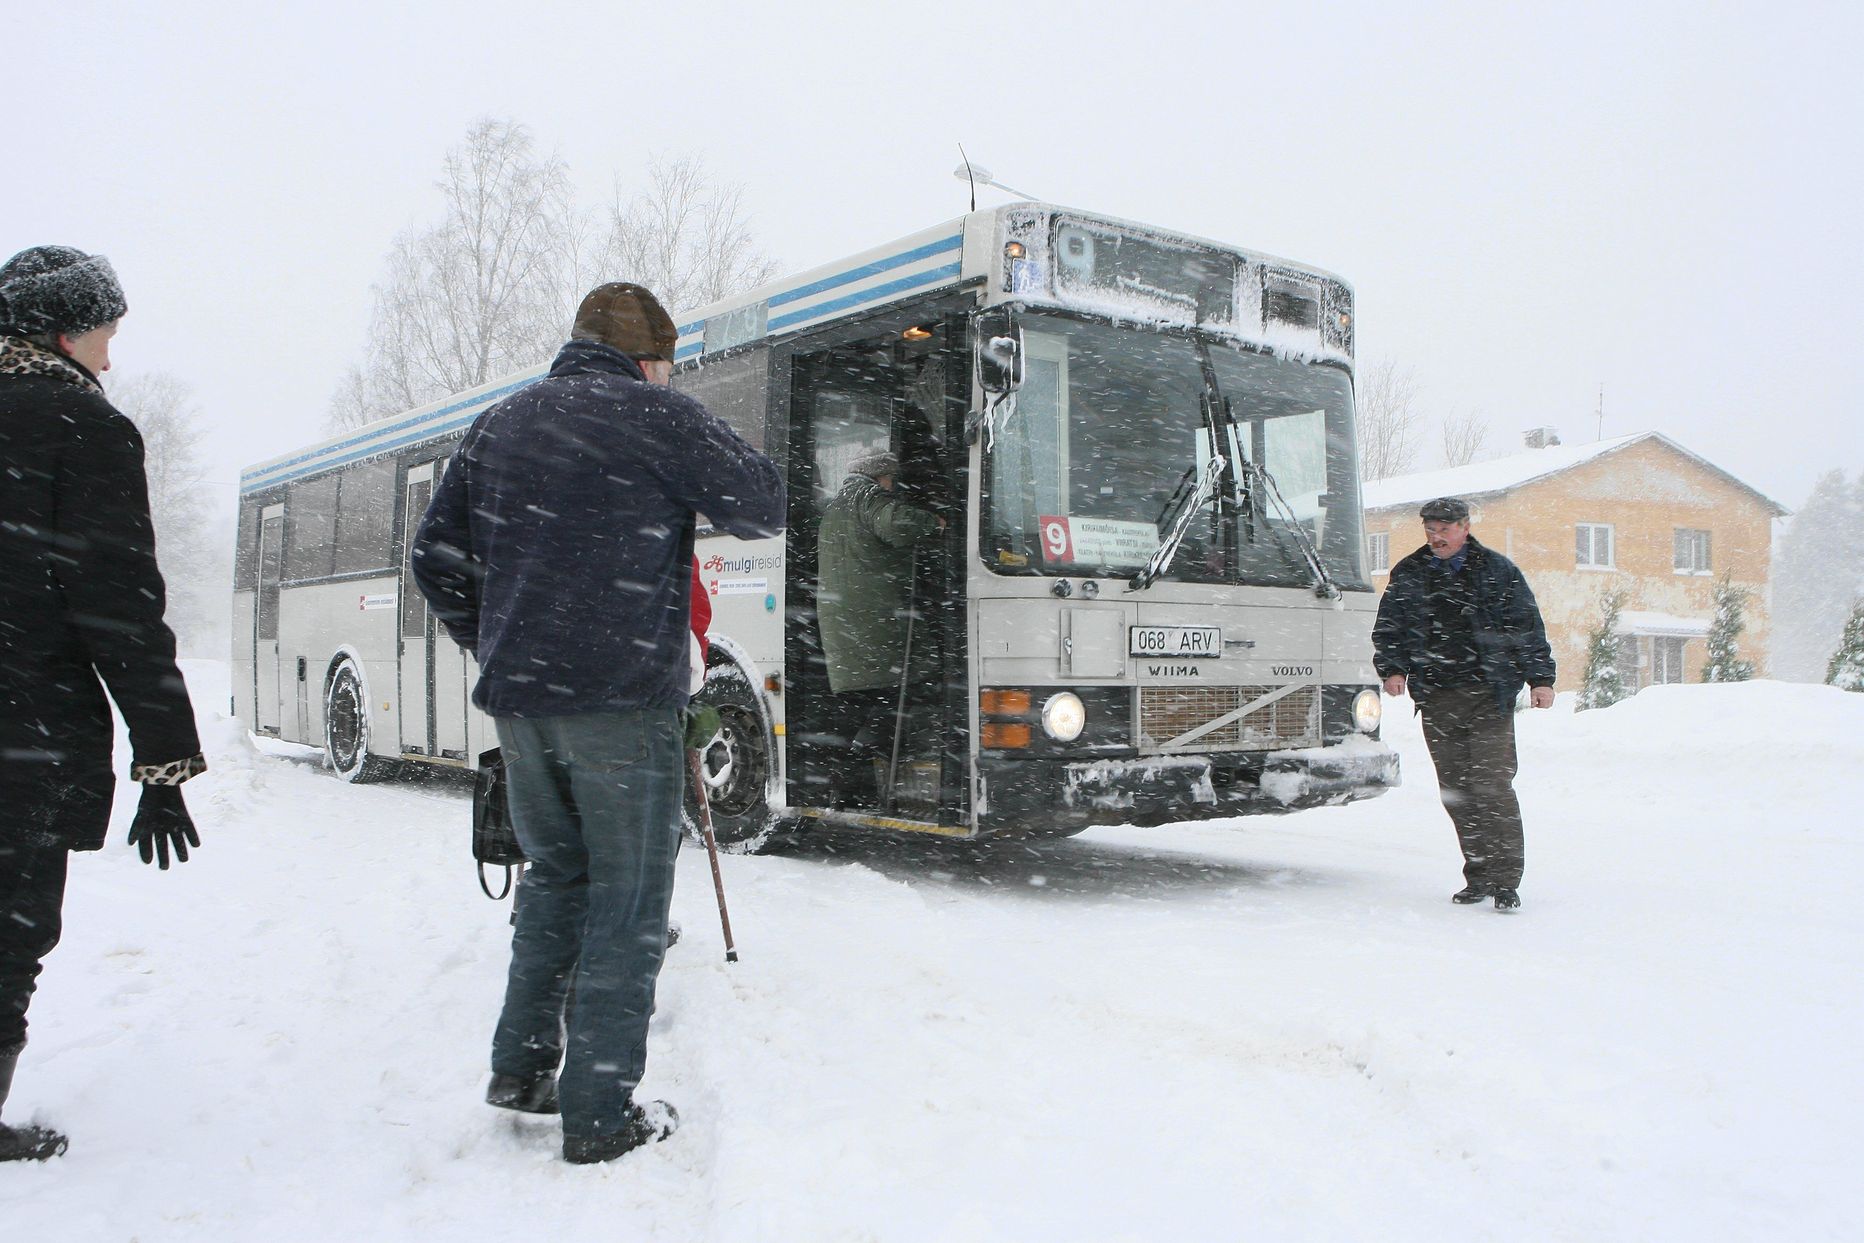 Osa busse on lumesaju tõttu graafikust maha jäänud.